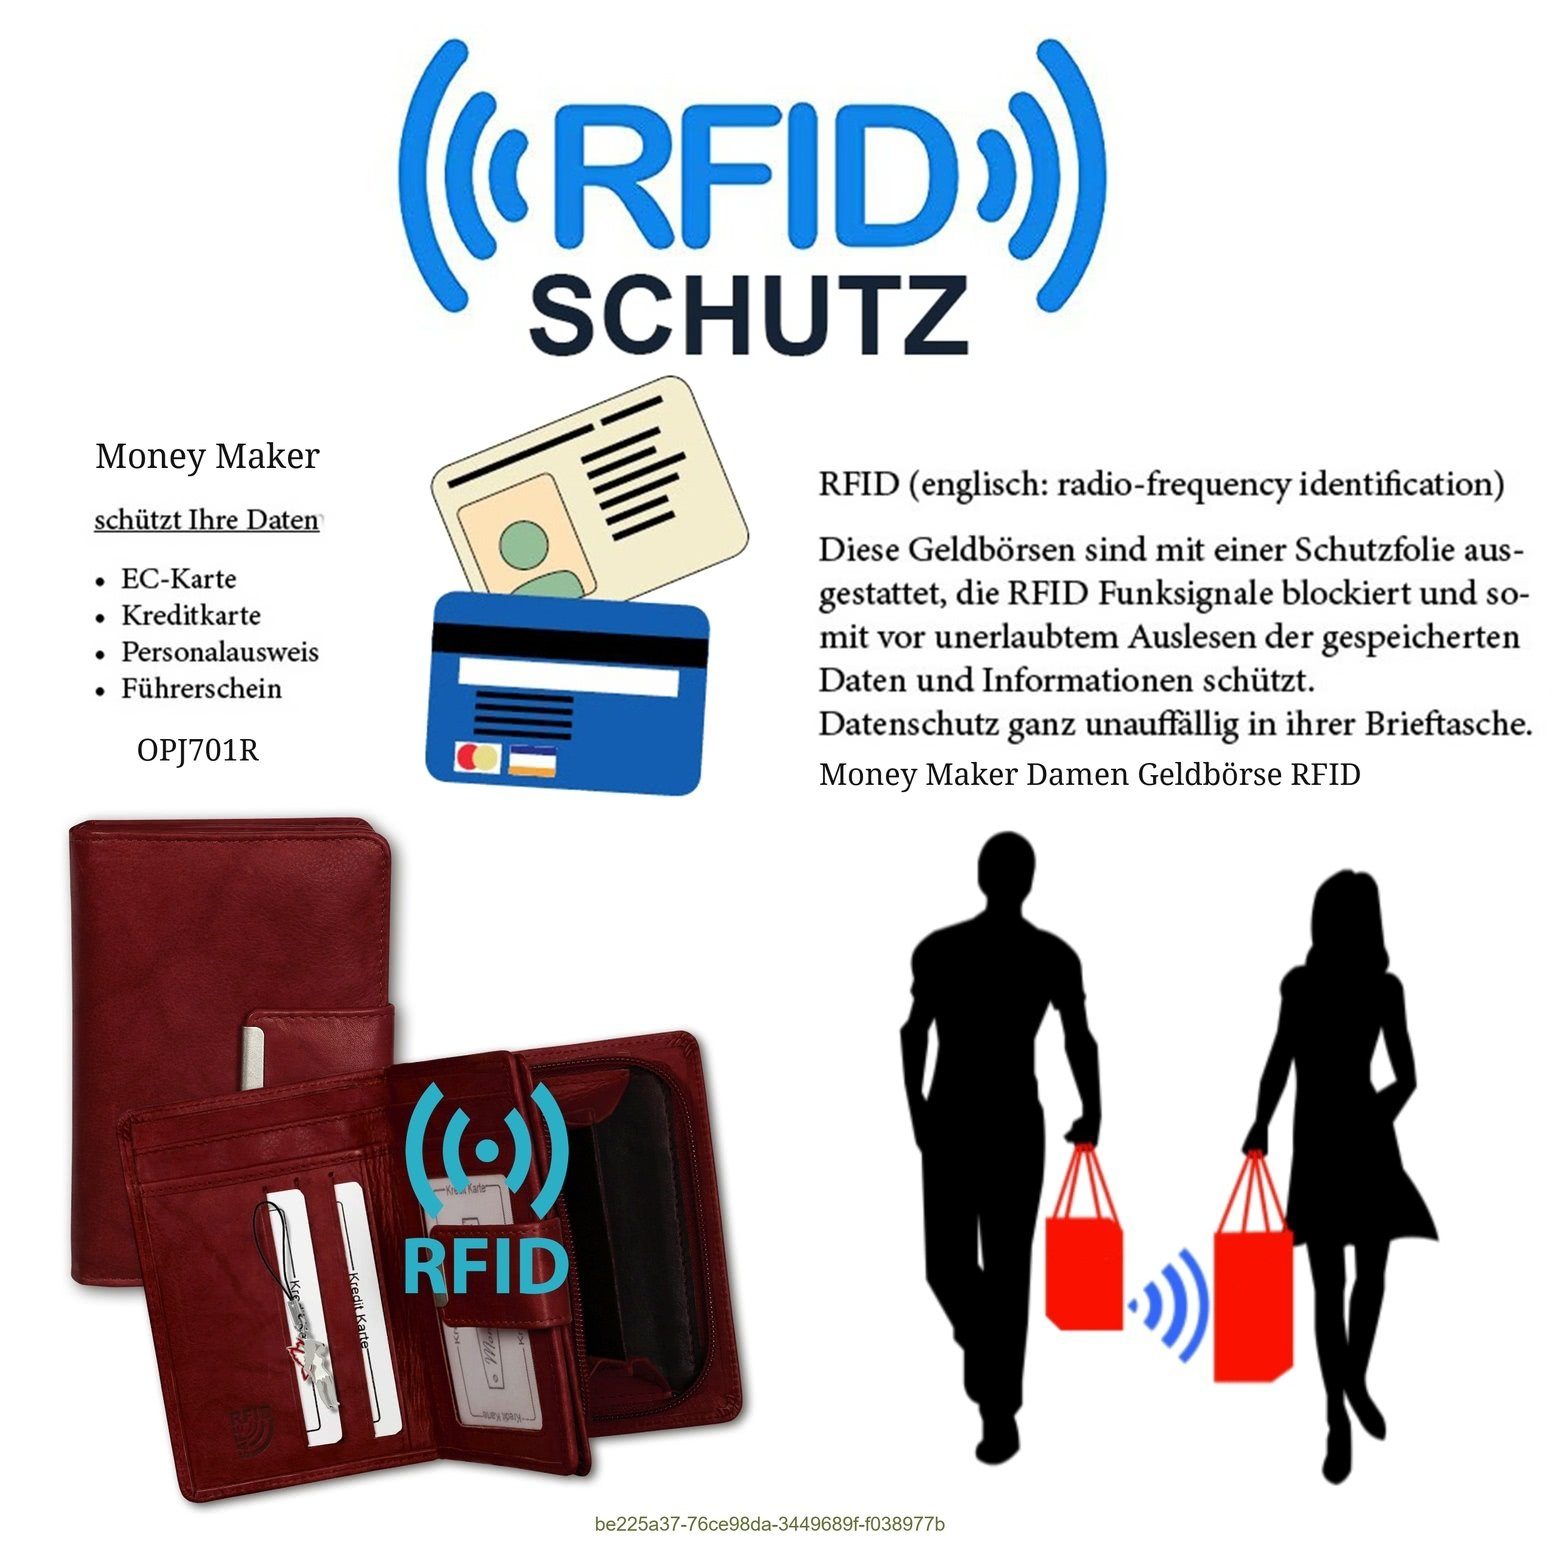 RFID 9cm, Börse rot Money Maker Damen Damen Größe Portemonnaie), Portemonnaie Echtleder (Portemonnaie, ca. Money Maker Geldbörse